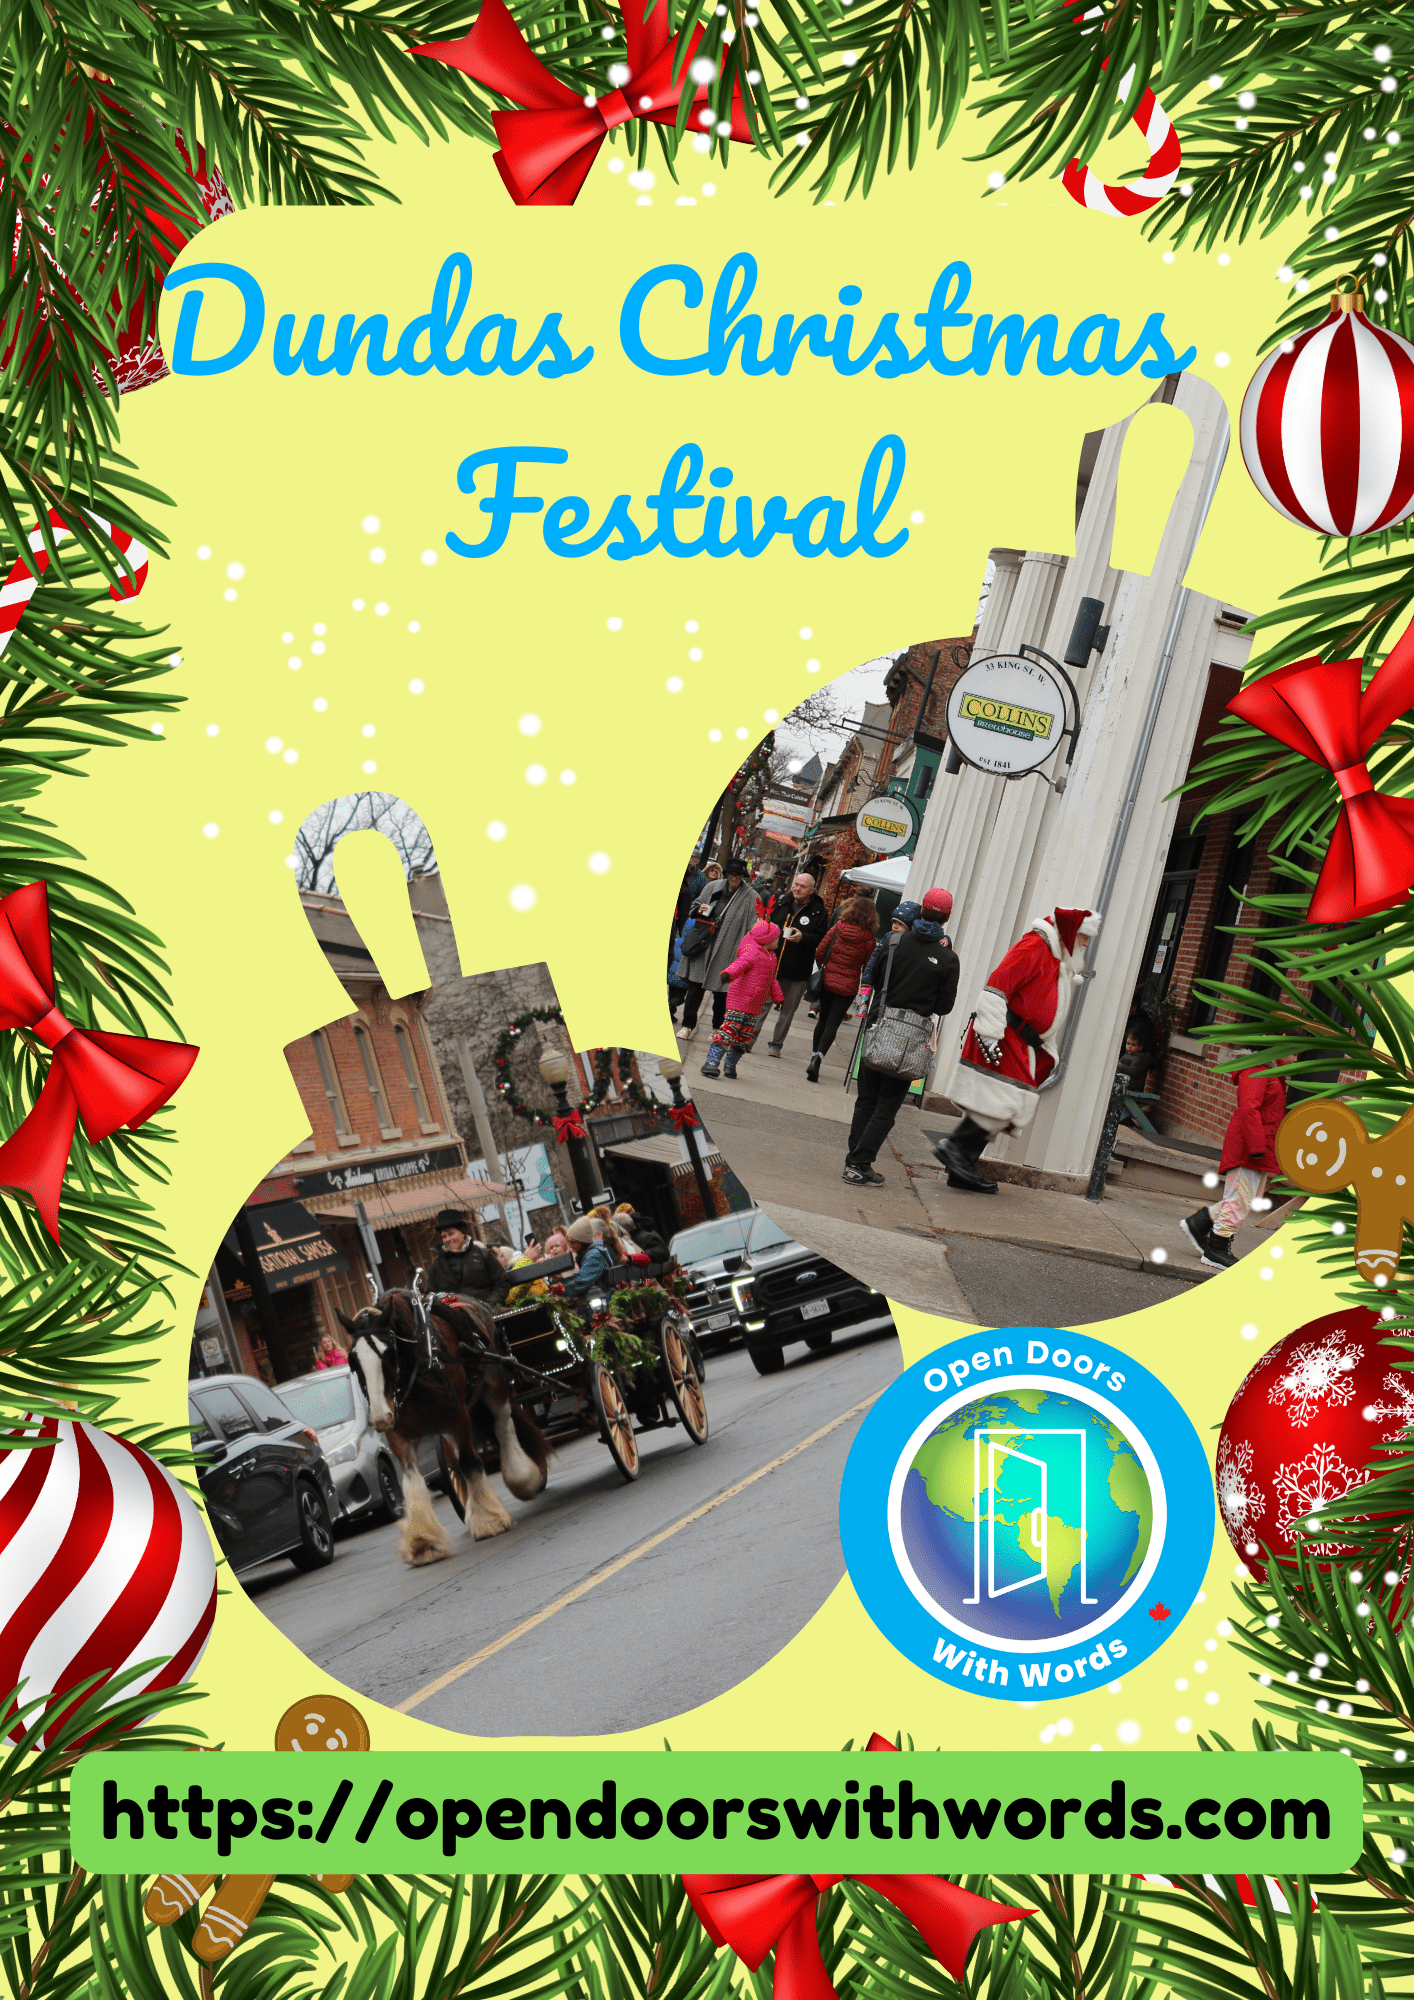 Dundas Christmas Festival - Dickens of a Christmas